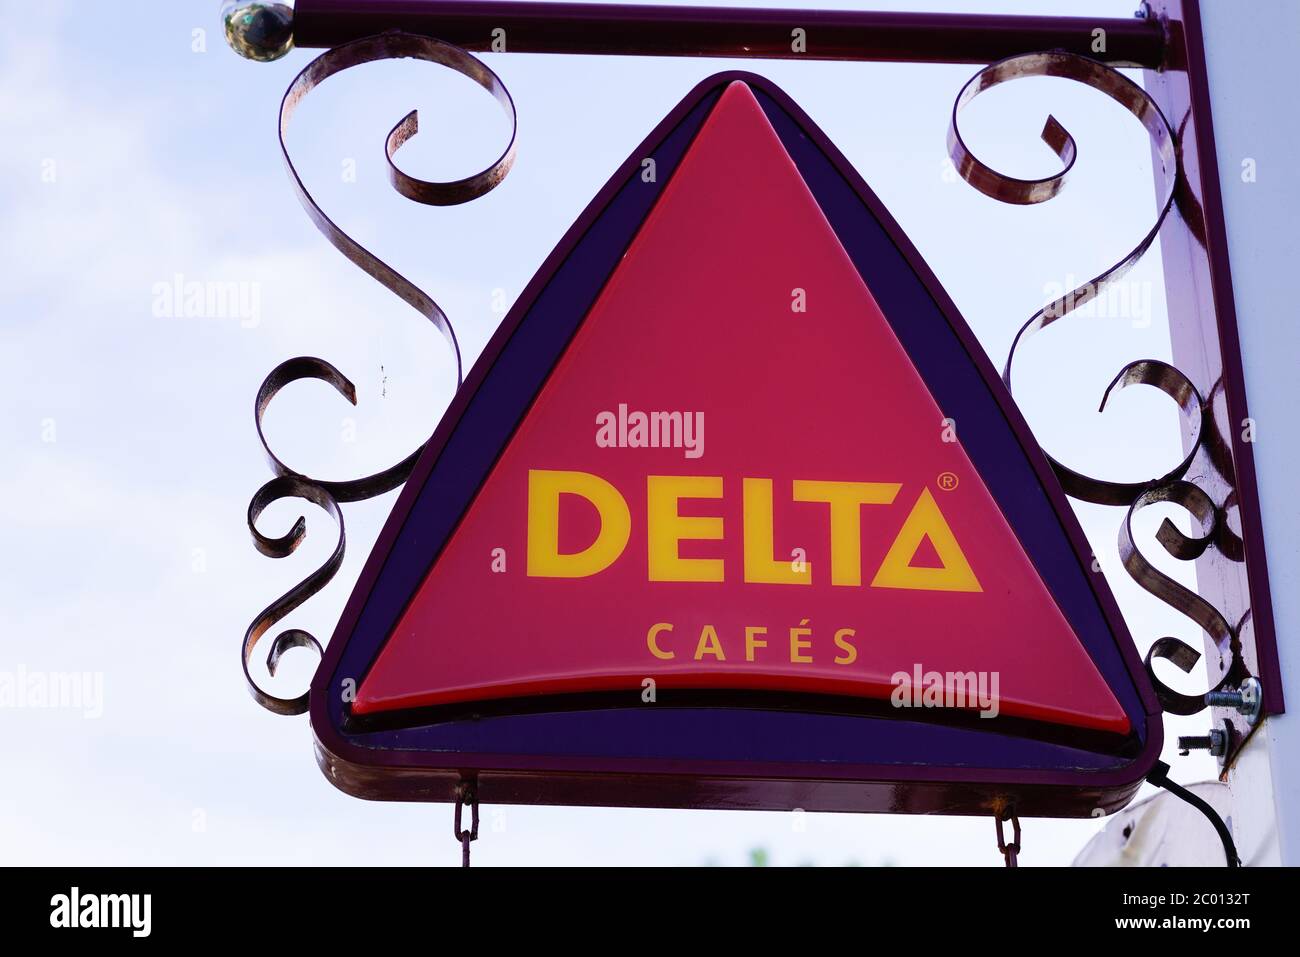 Delta Cafés  Famous brands, Famous, Brand